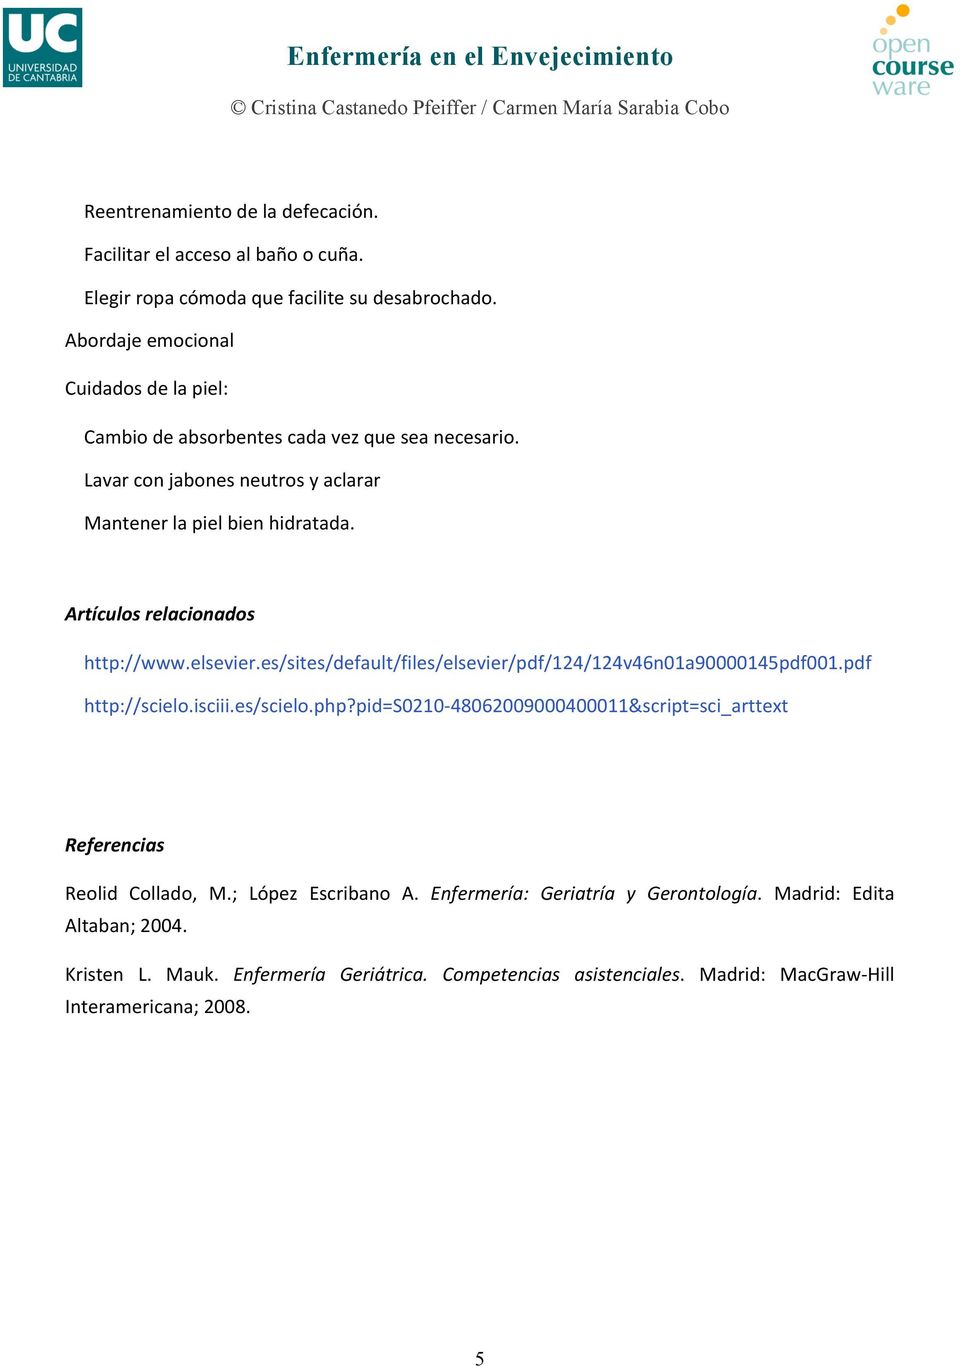 Artículos relacionados http://www.elsevier.es/sites/default/files/elsevier/pdf/124/124v46n01a90000145pdf001.pdf http://scielo.isciii.es/scielo.php?